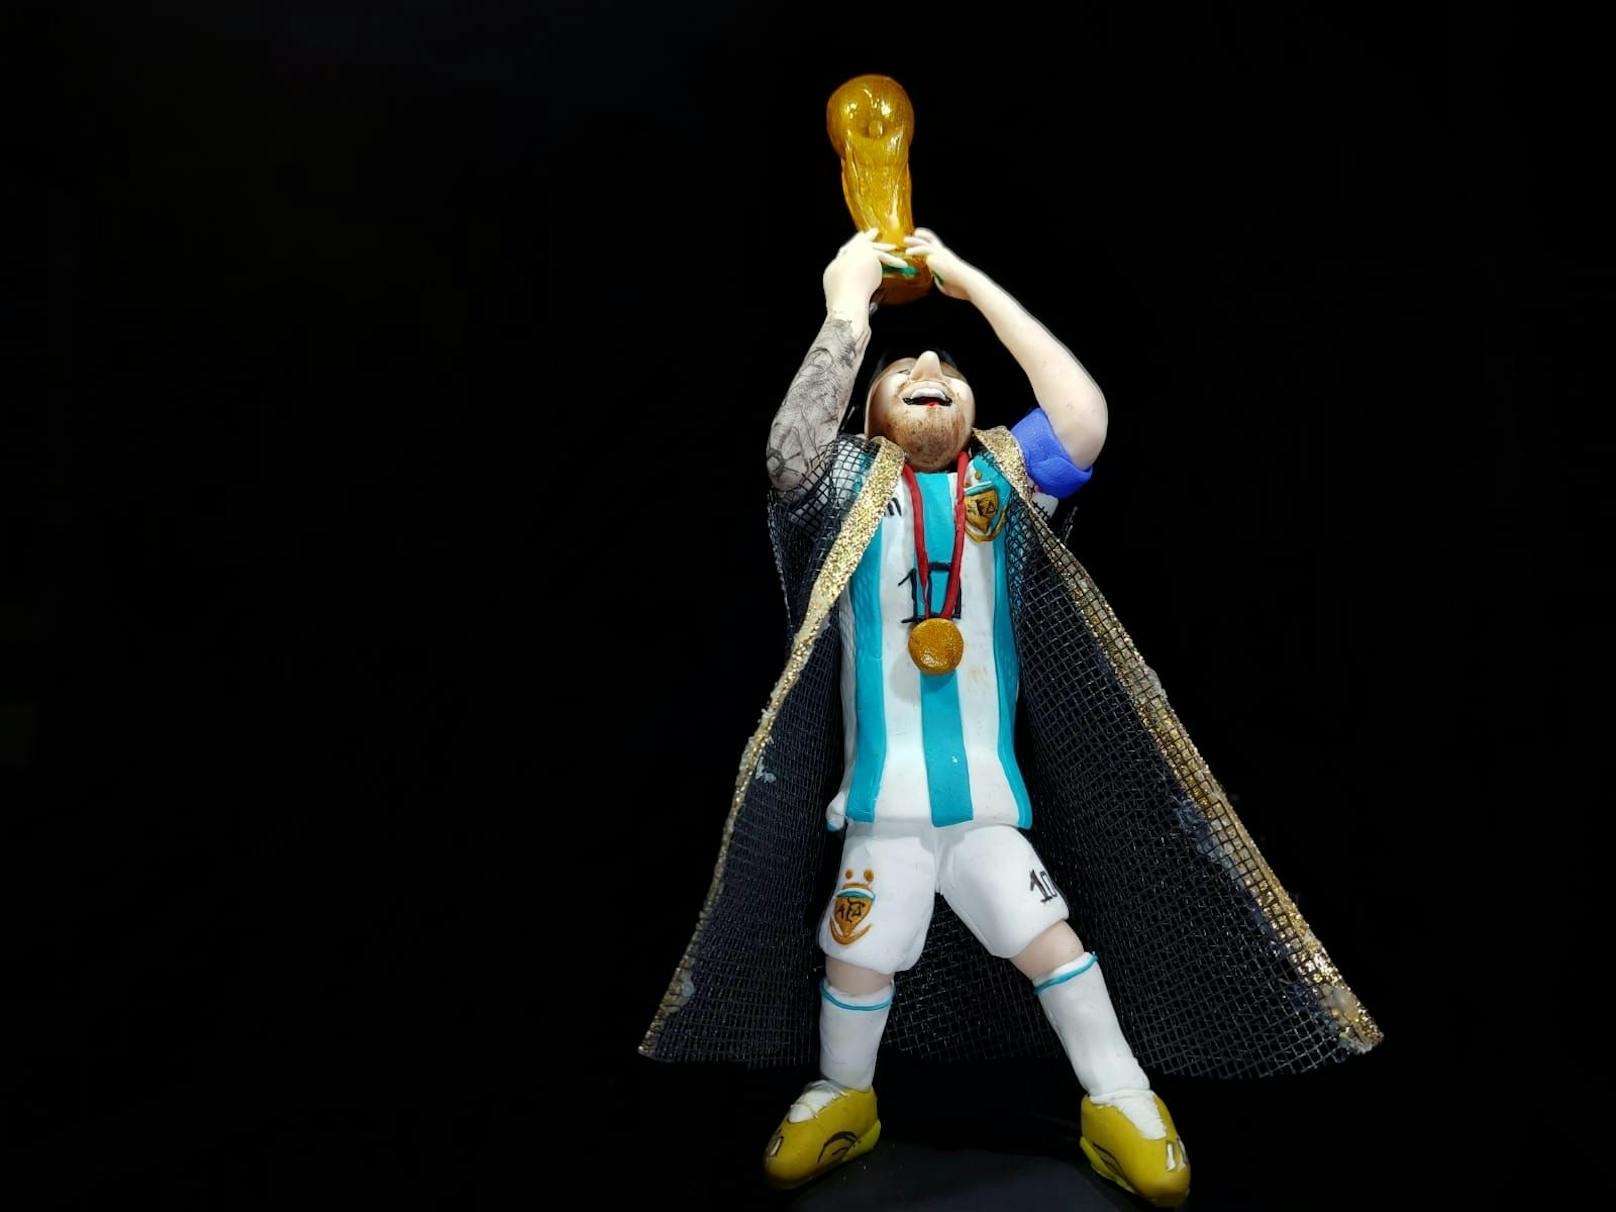 Den jubelnden Messi – inklusive Umhang und Pokal – kreierte Emmanuel P. aus Plastilin.